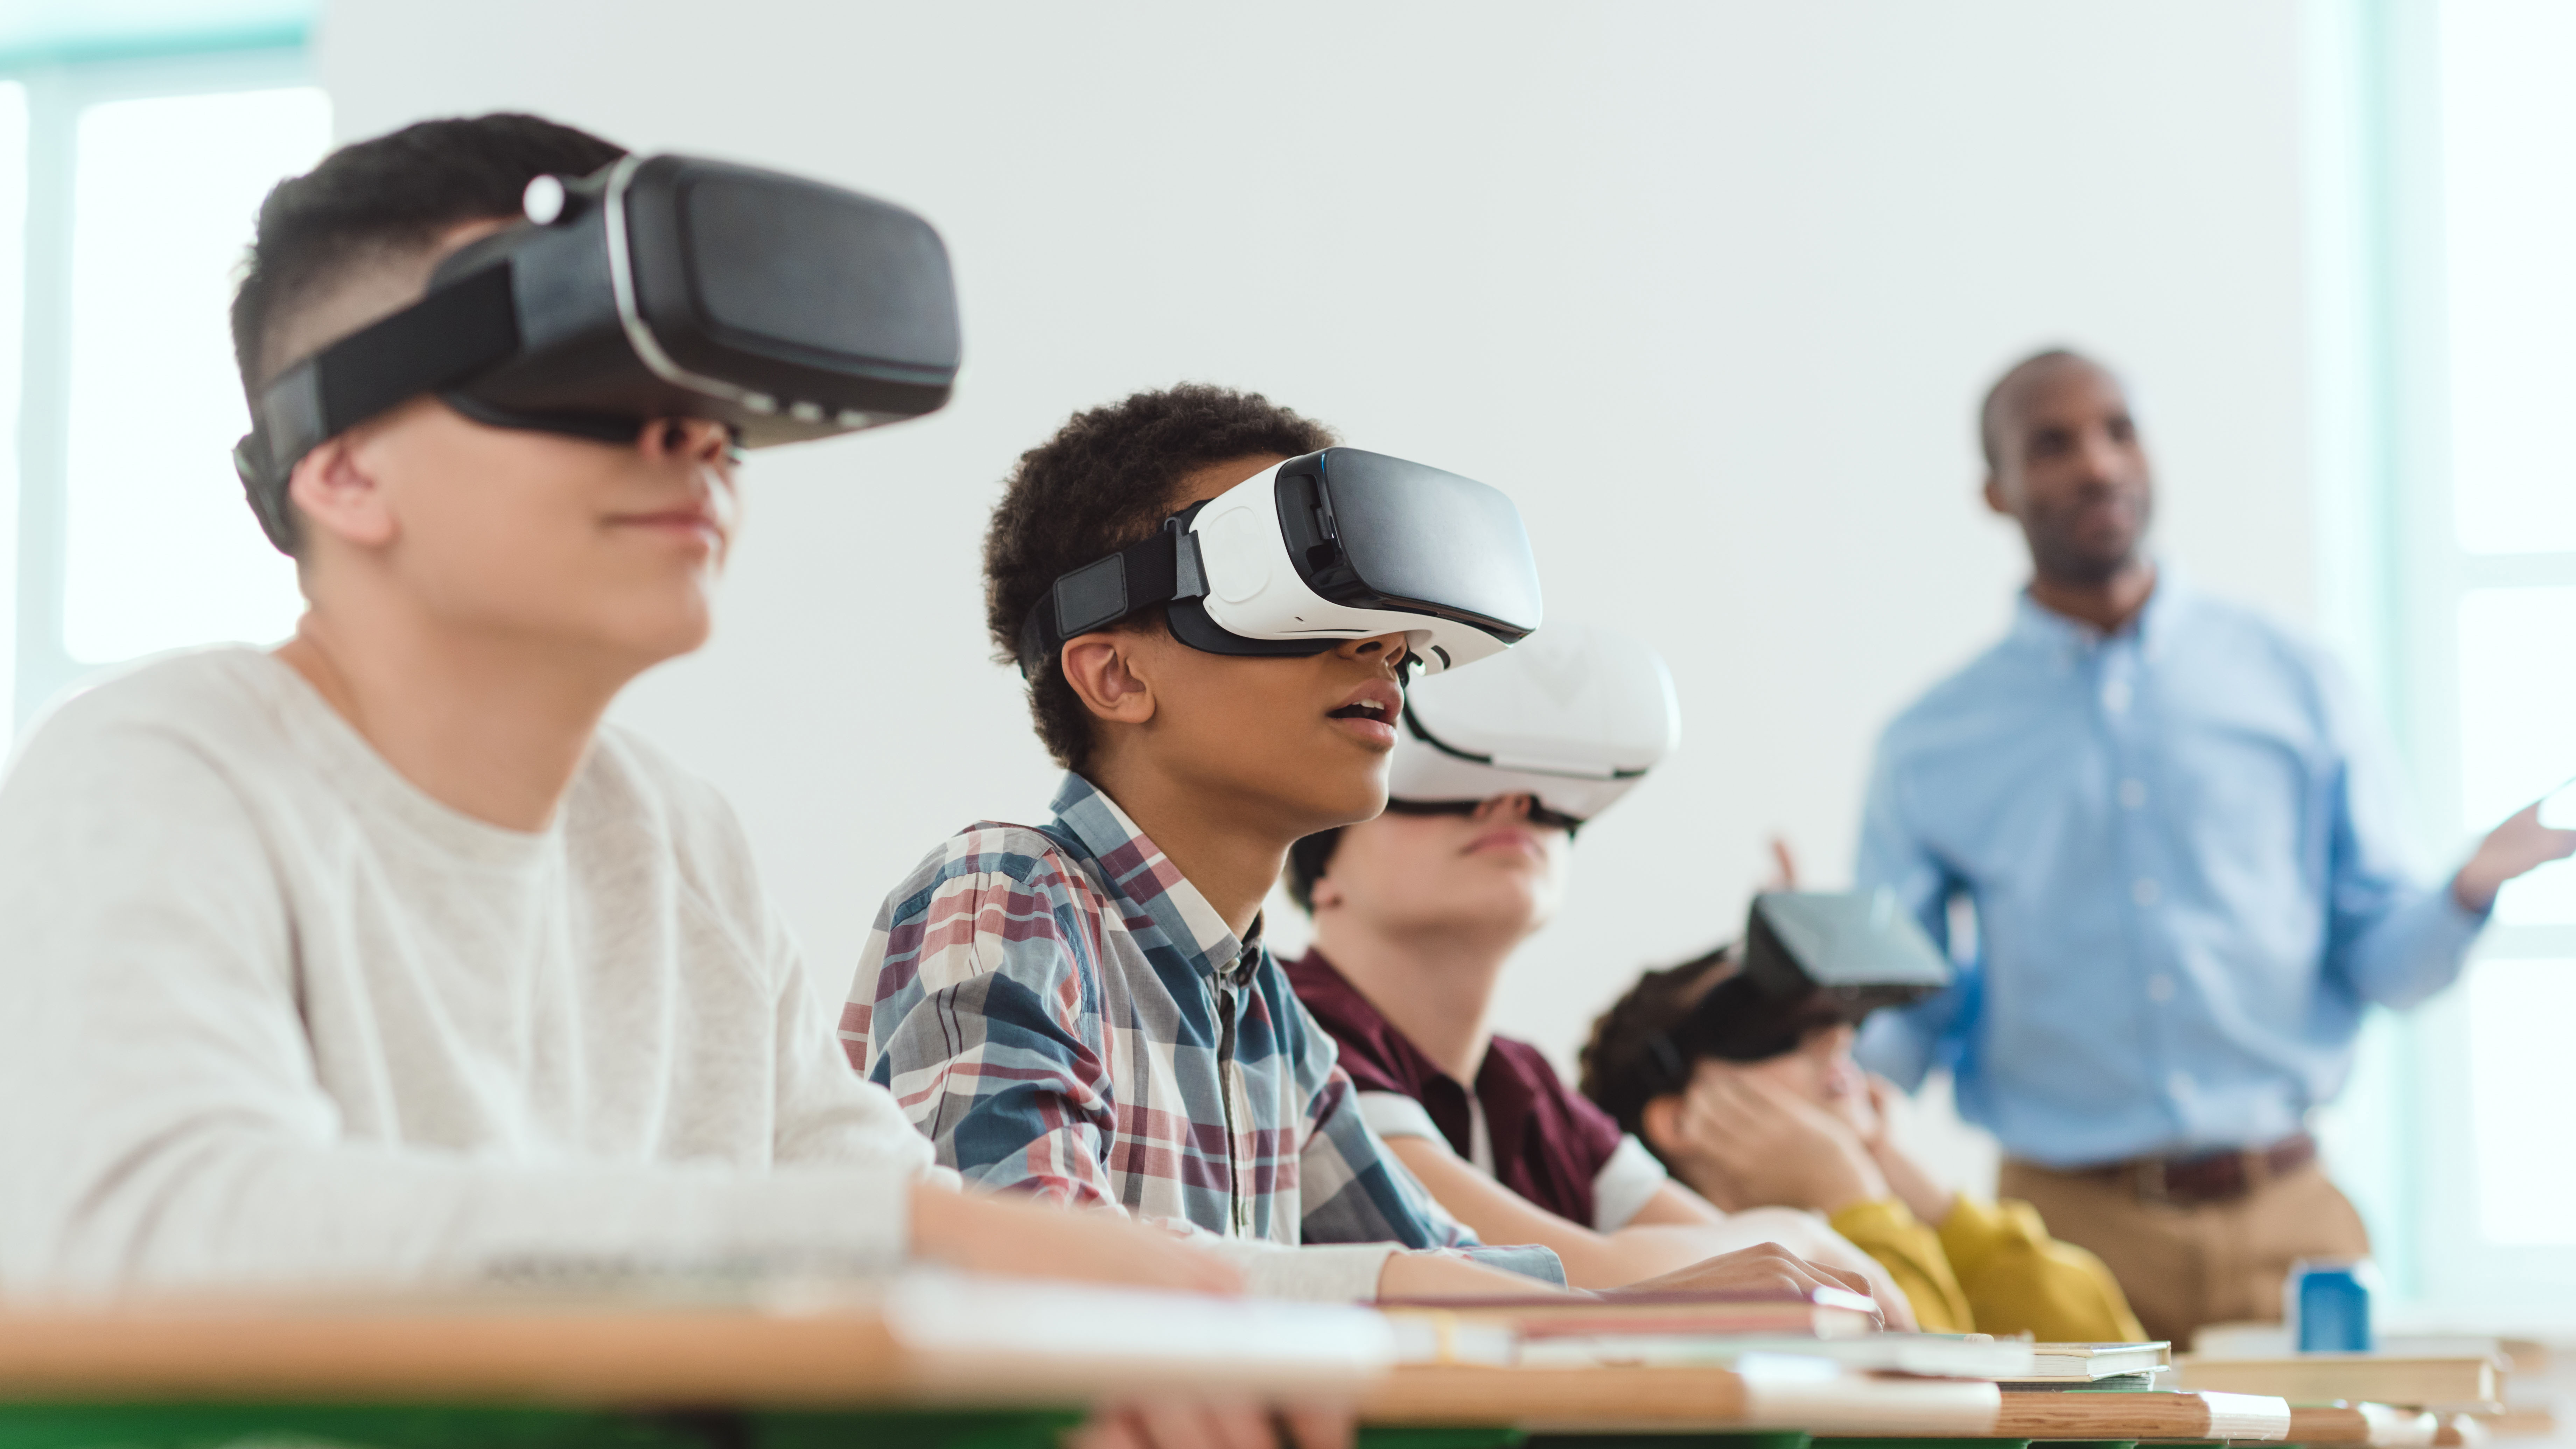 Vr уроки. Виар технологии в образовании. Виртуальная реальность в образовании. Виртуальные очки в школе. Очки виртуальной реальности на уроке.